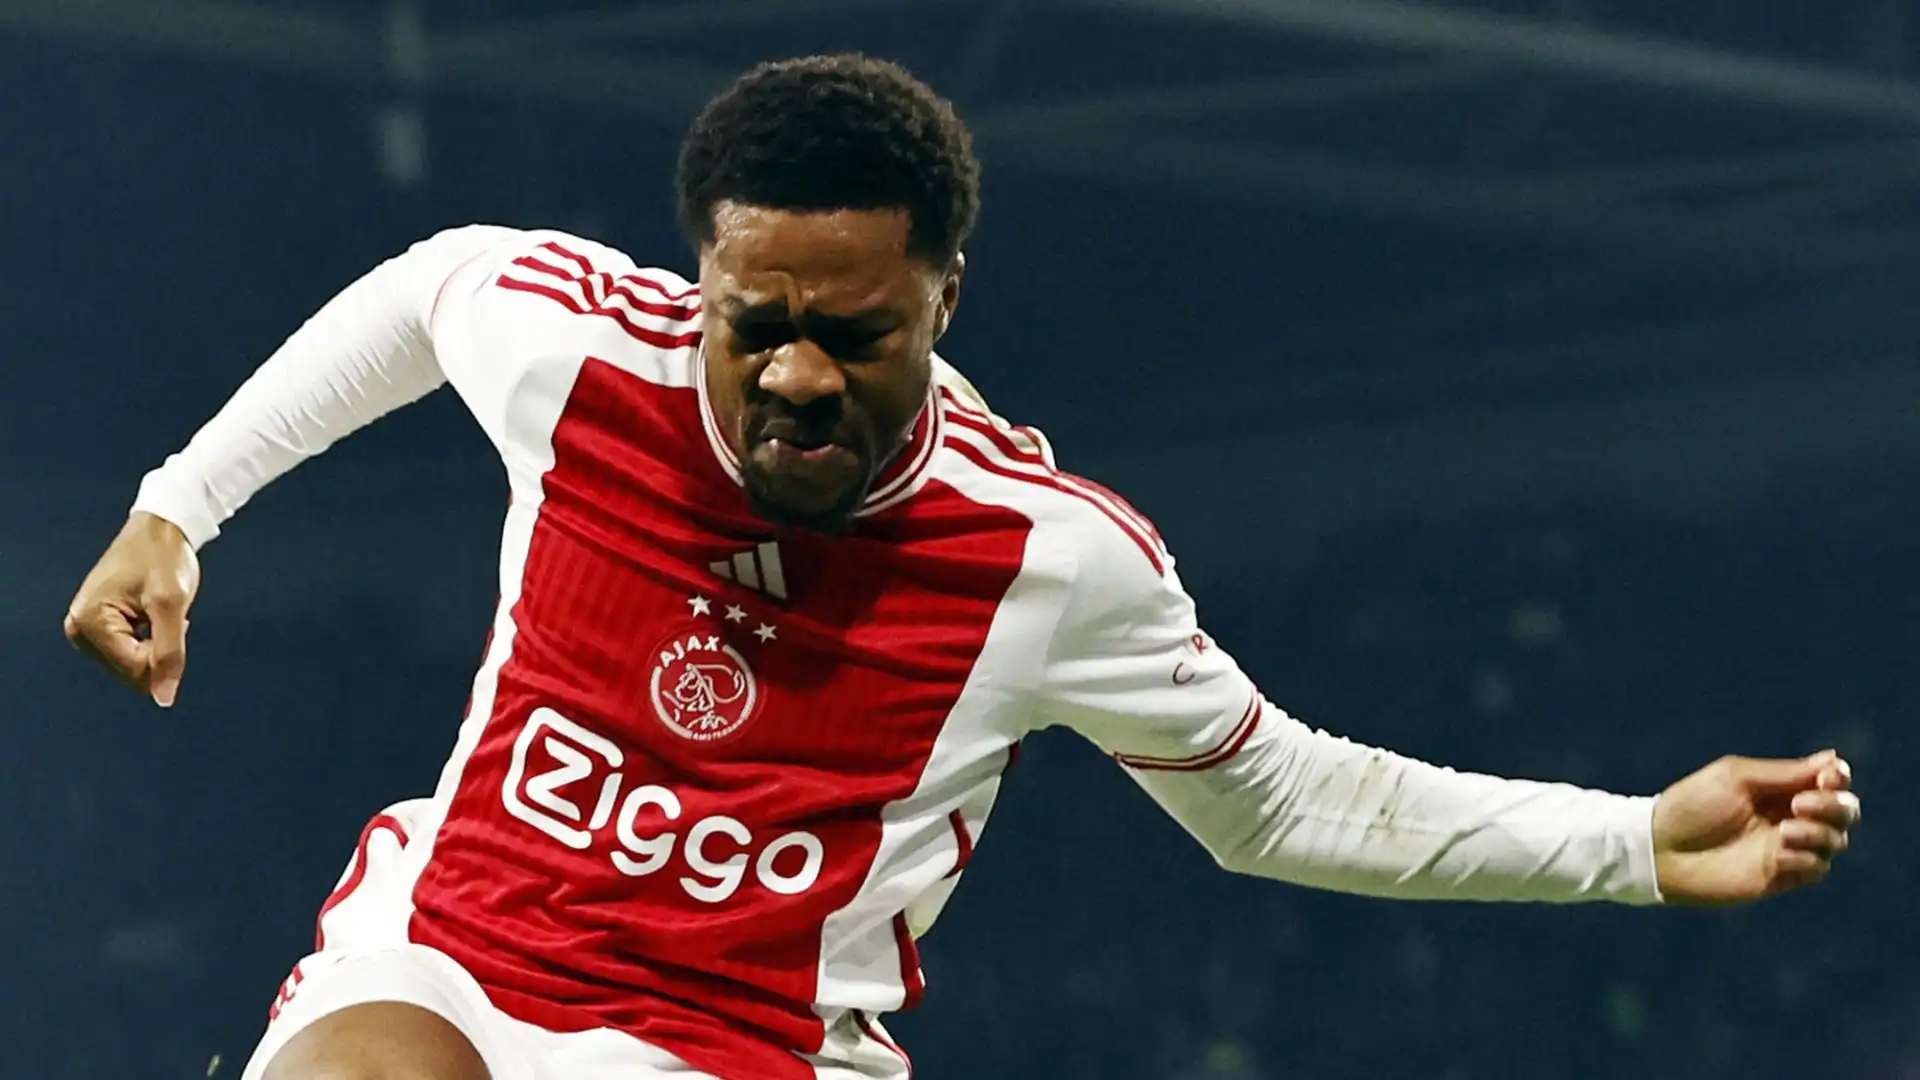 L'Ajax è disposto al prestito ma vuole l'obbligo di riscatto a 15 milioni di euro